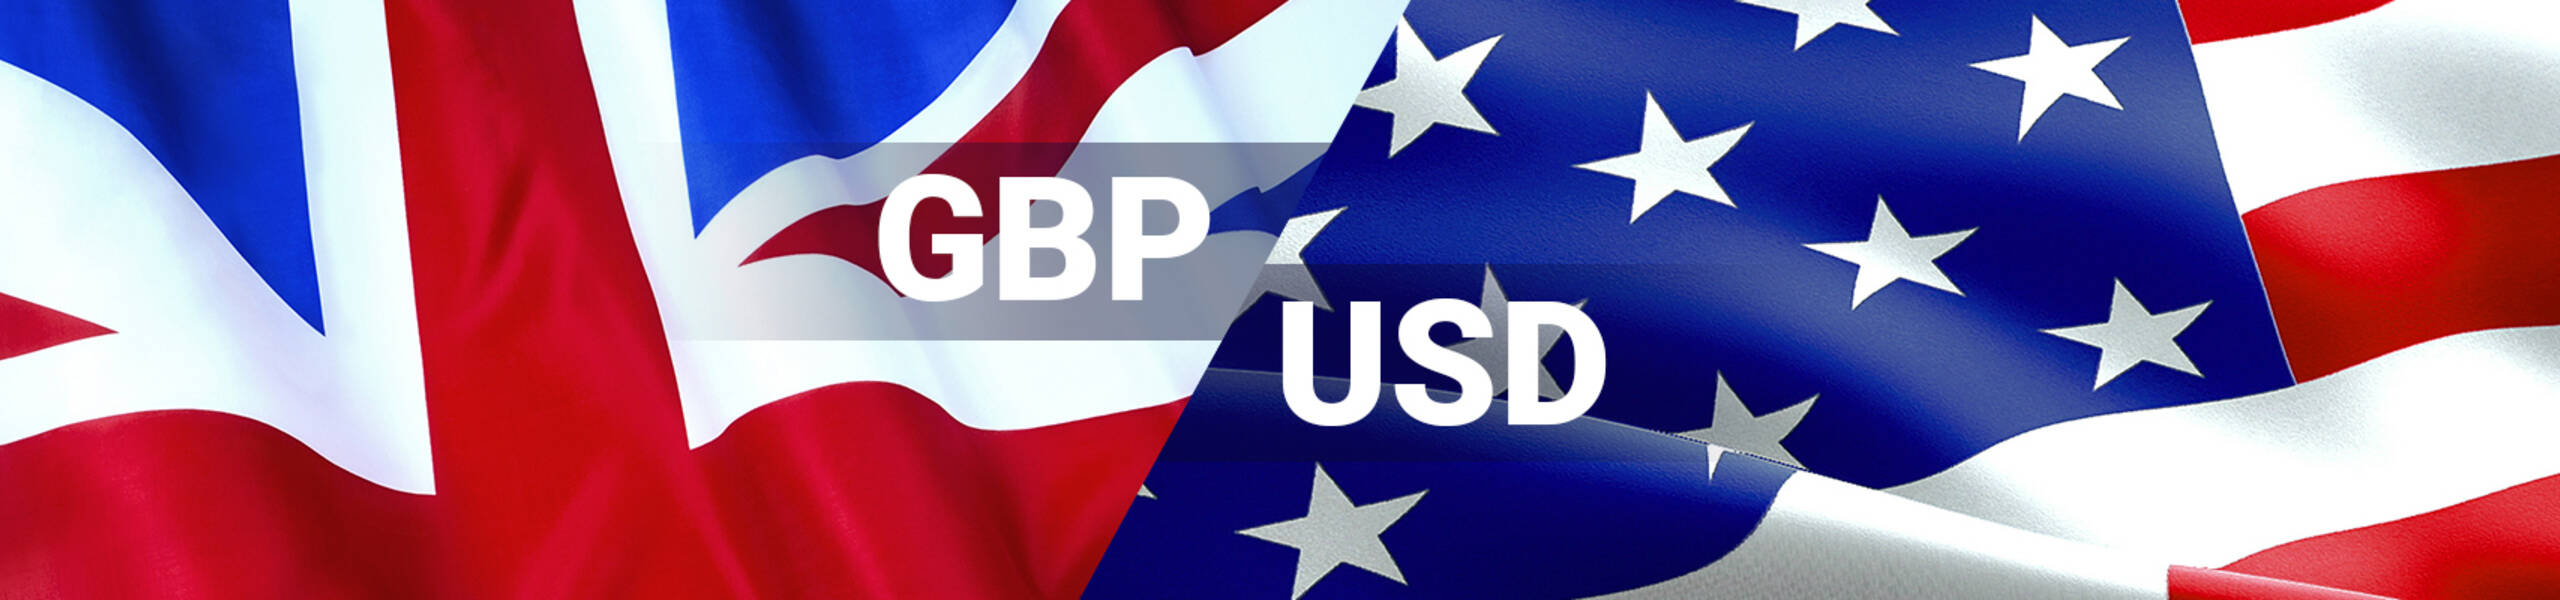 GBP/USD Previsión semanal Septiembre 3 al 7